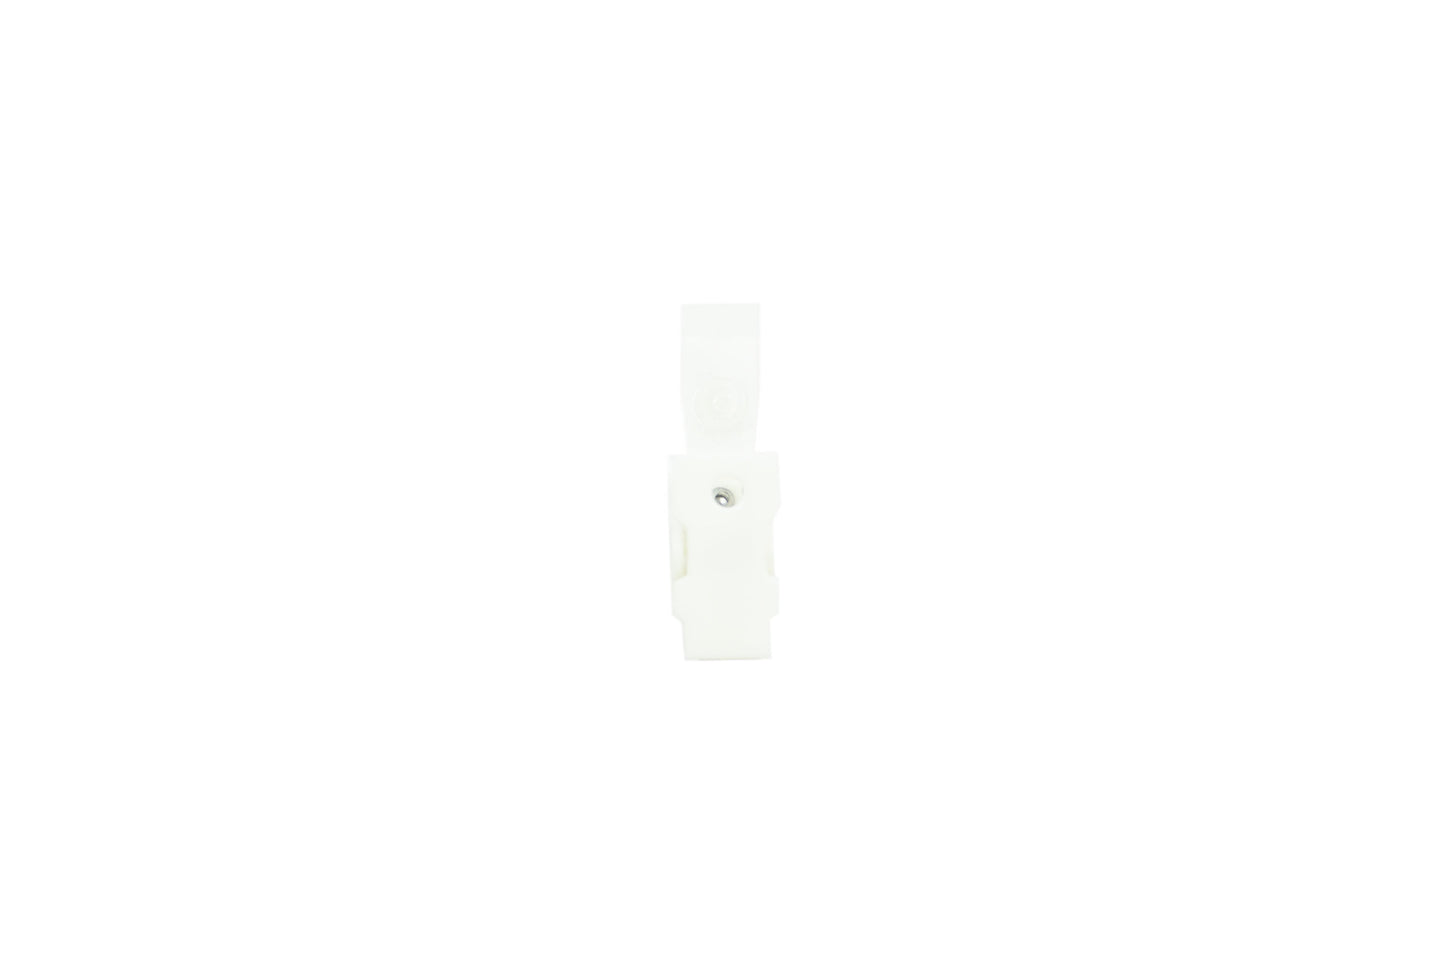 Plastic ID Clip with Transparent PVC Straps 100pcs